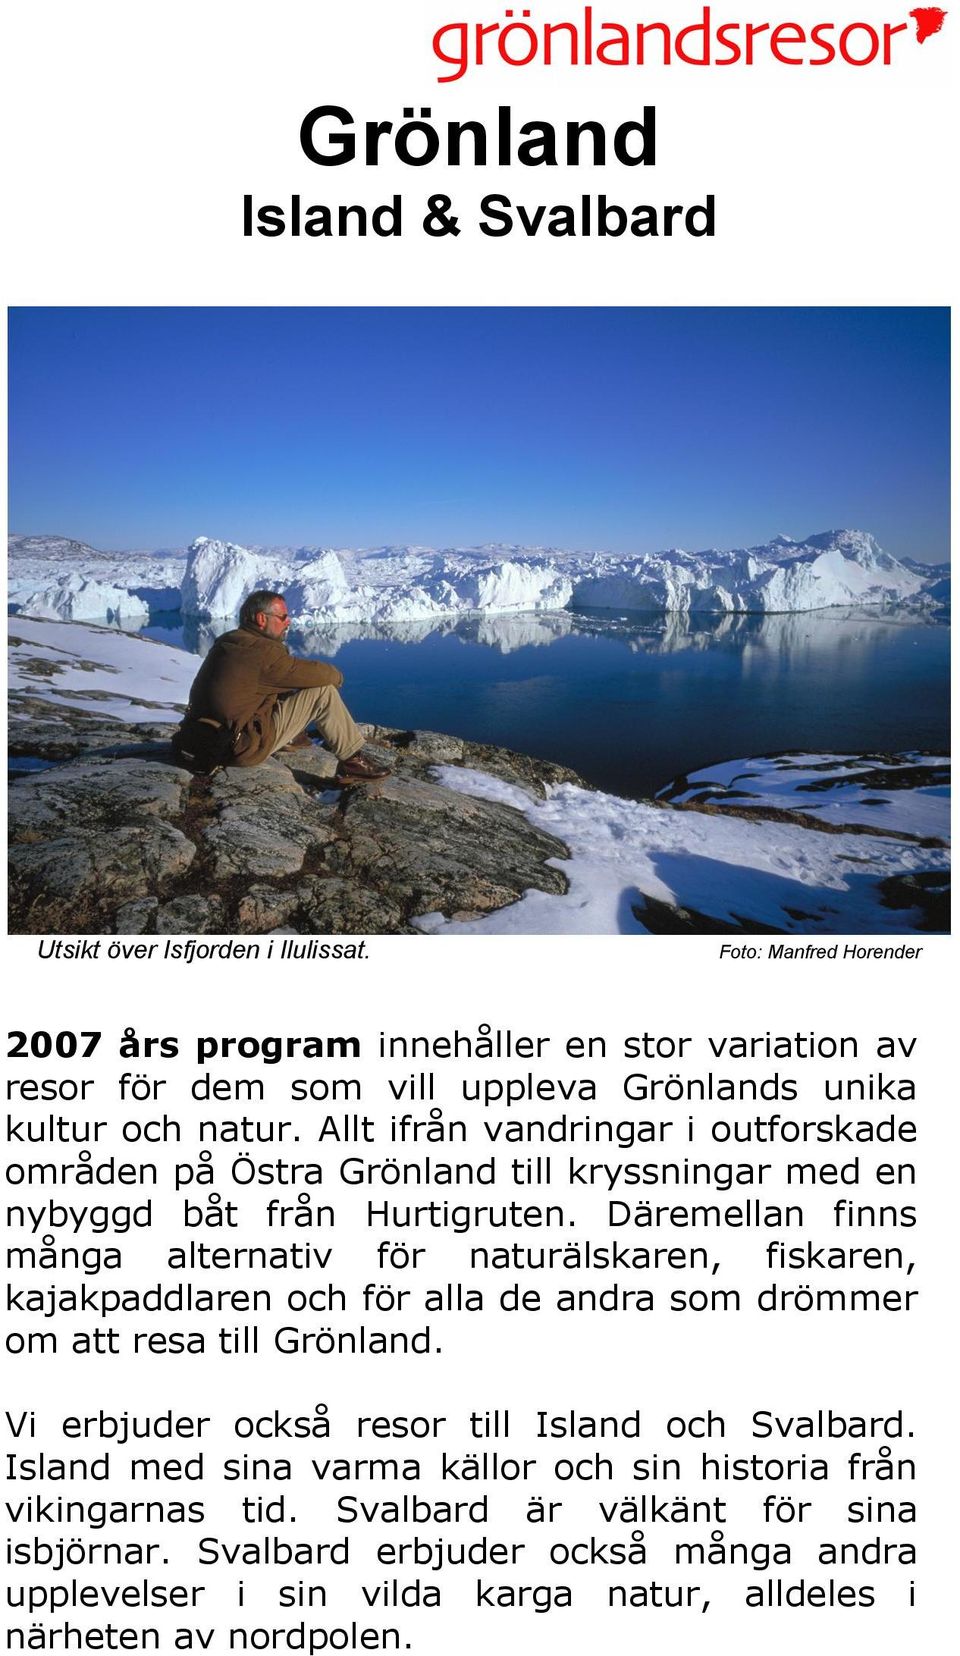 Allt ifrån vandringar i outforskade områden på Östra Grönland till kryssningar med en nybyggd båt från Hurtigruten.